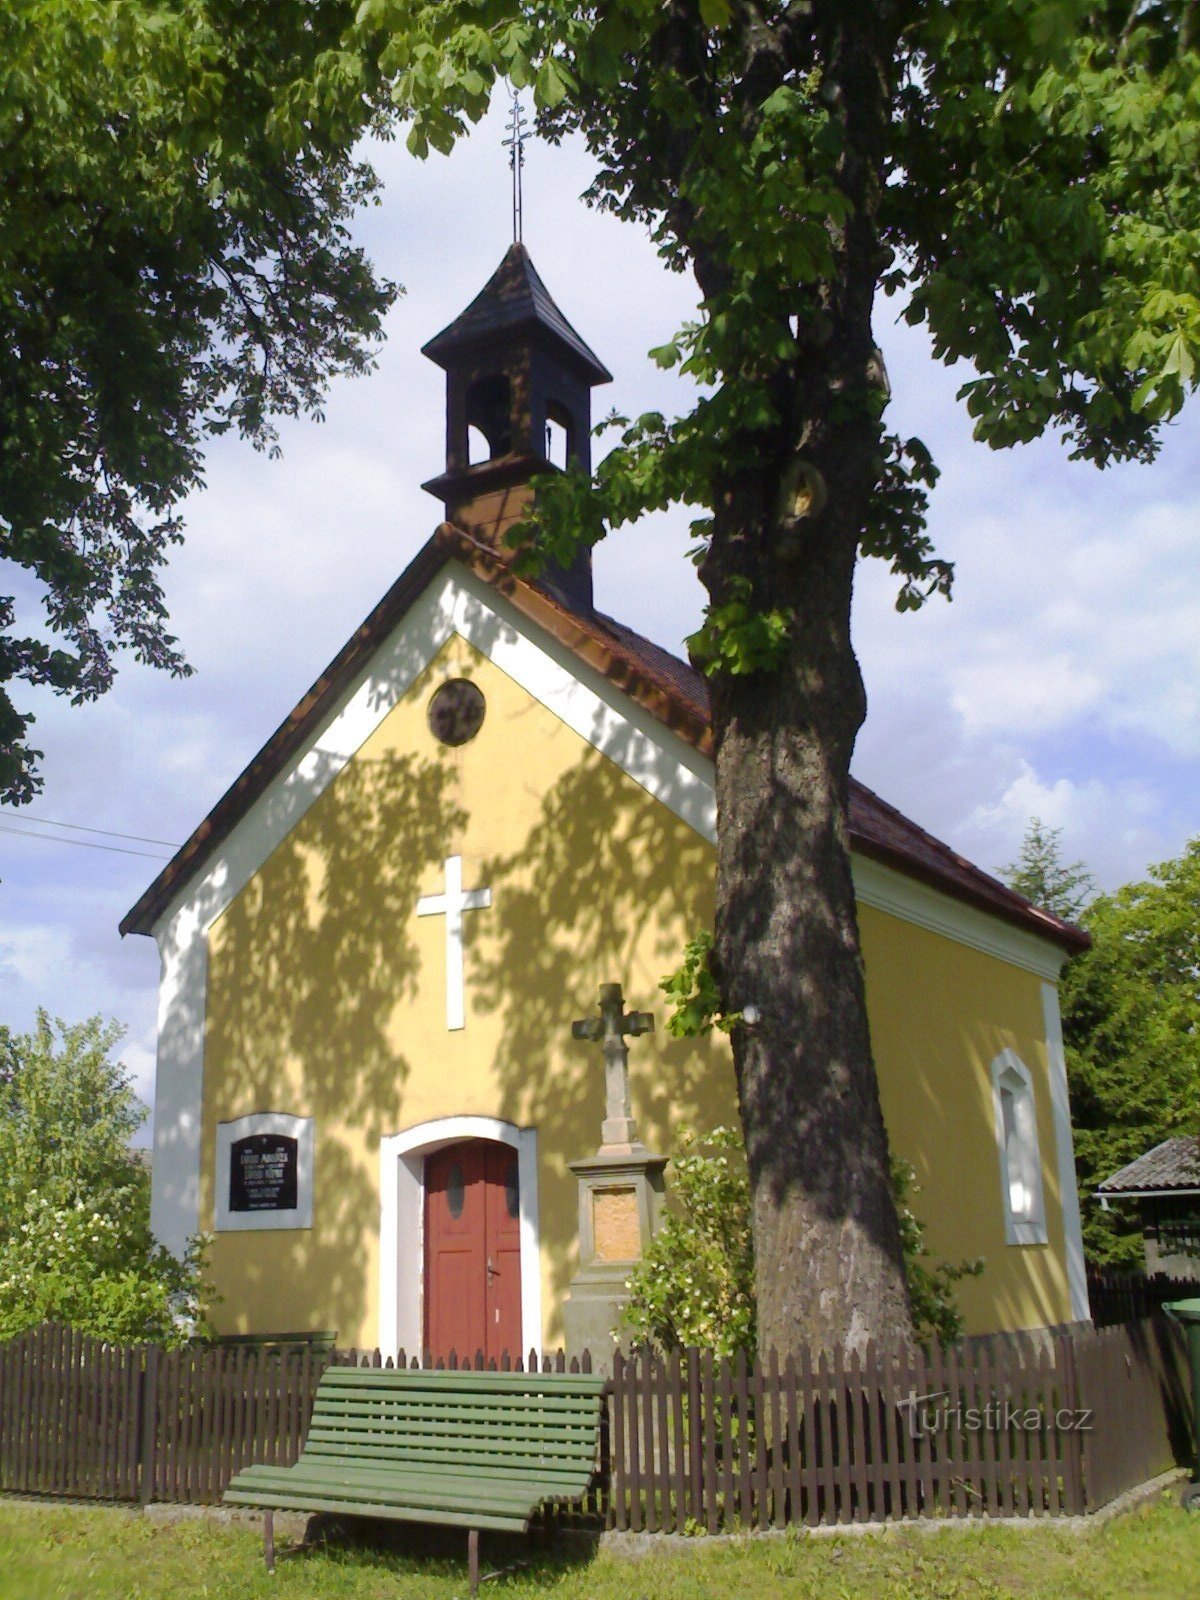 Ježkovice - chapelle Notre-Dame de Lourdes